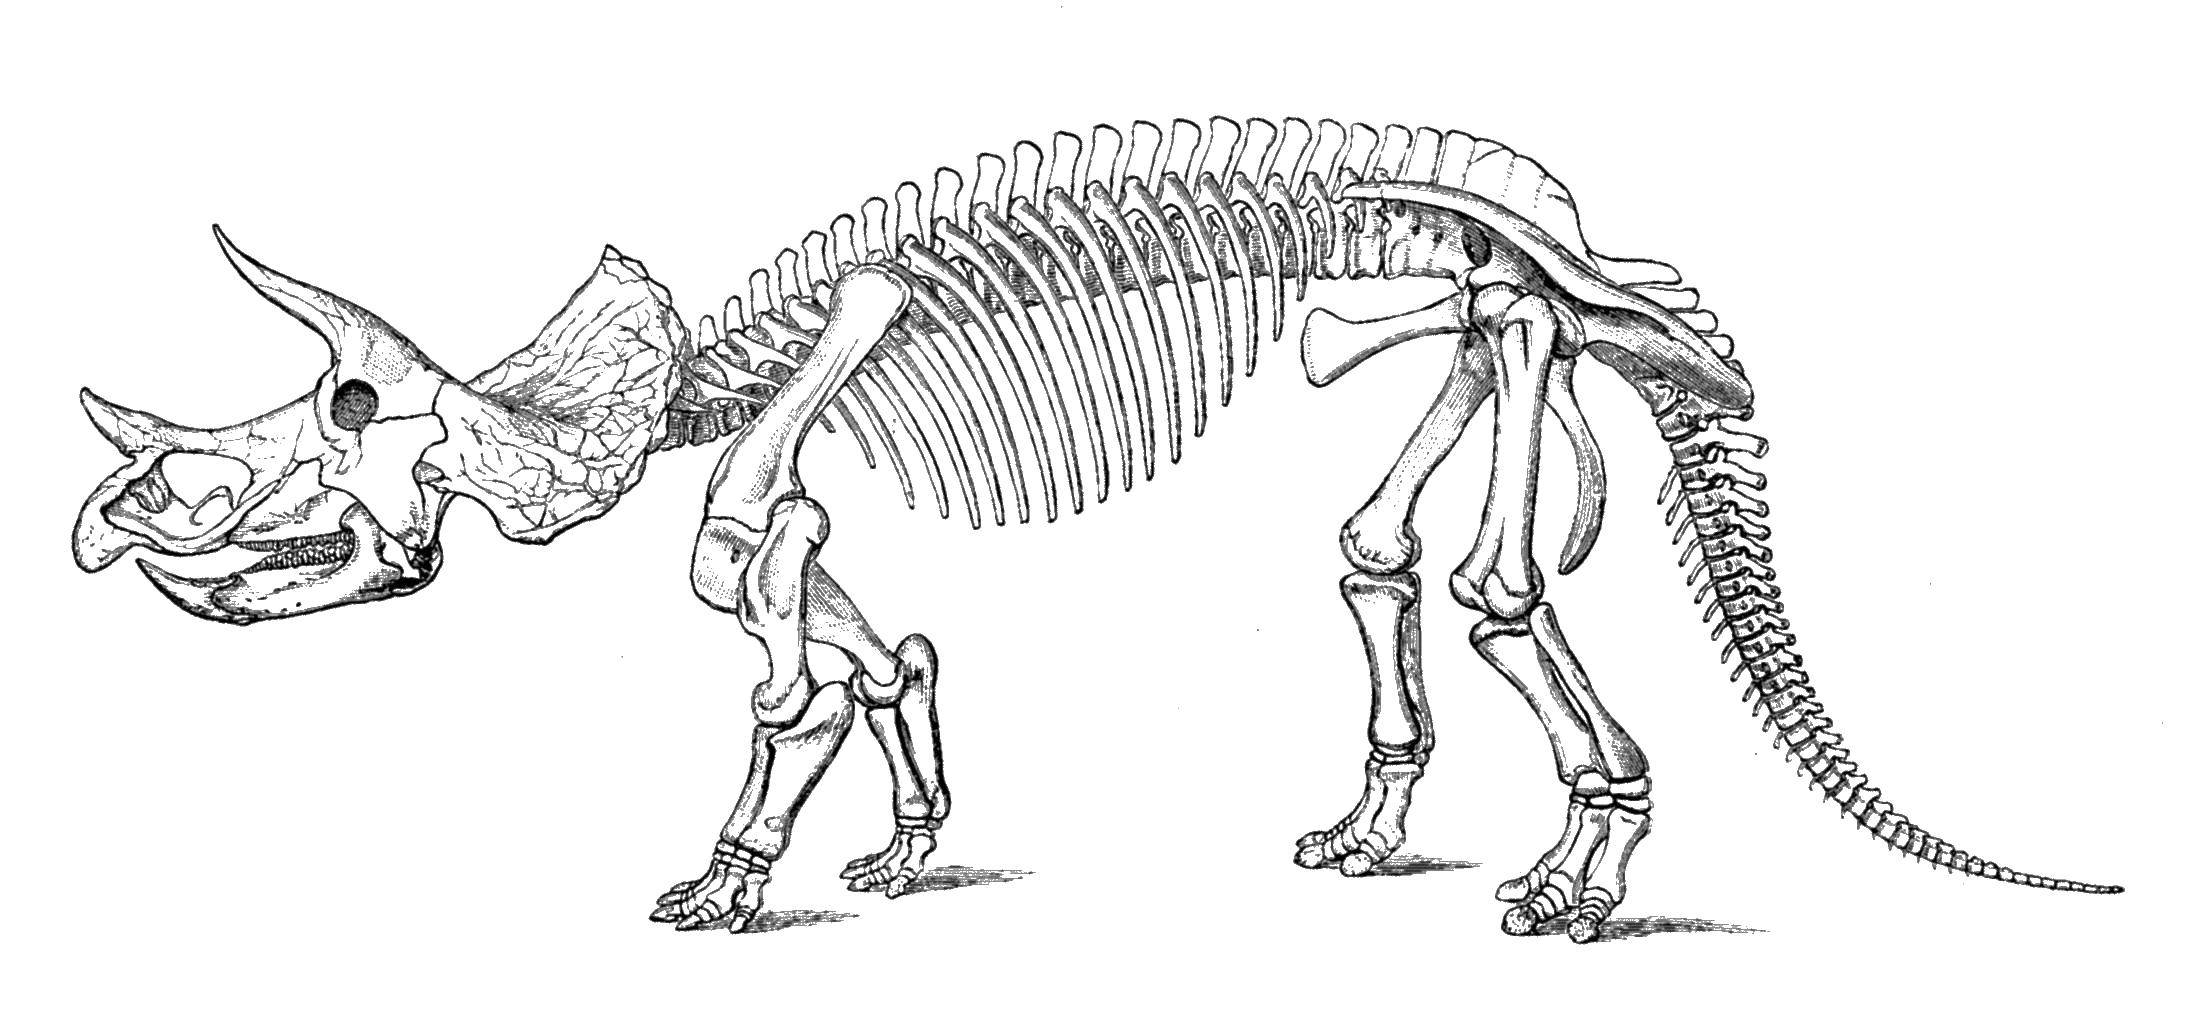 Название: Раскраска Скелет трицератопса. Категория: парк юрского периода. Теги: Динозавры.